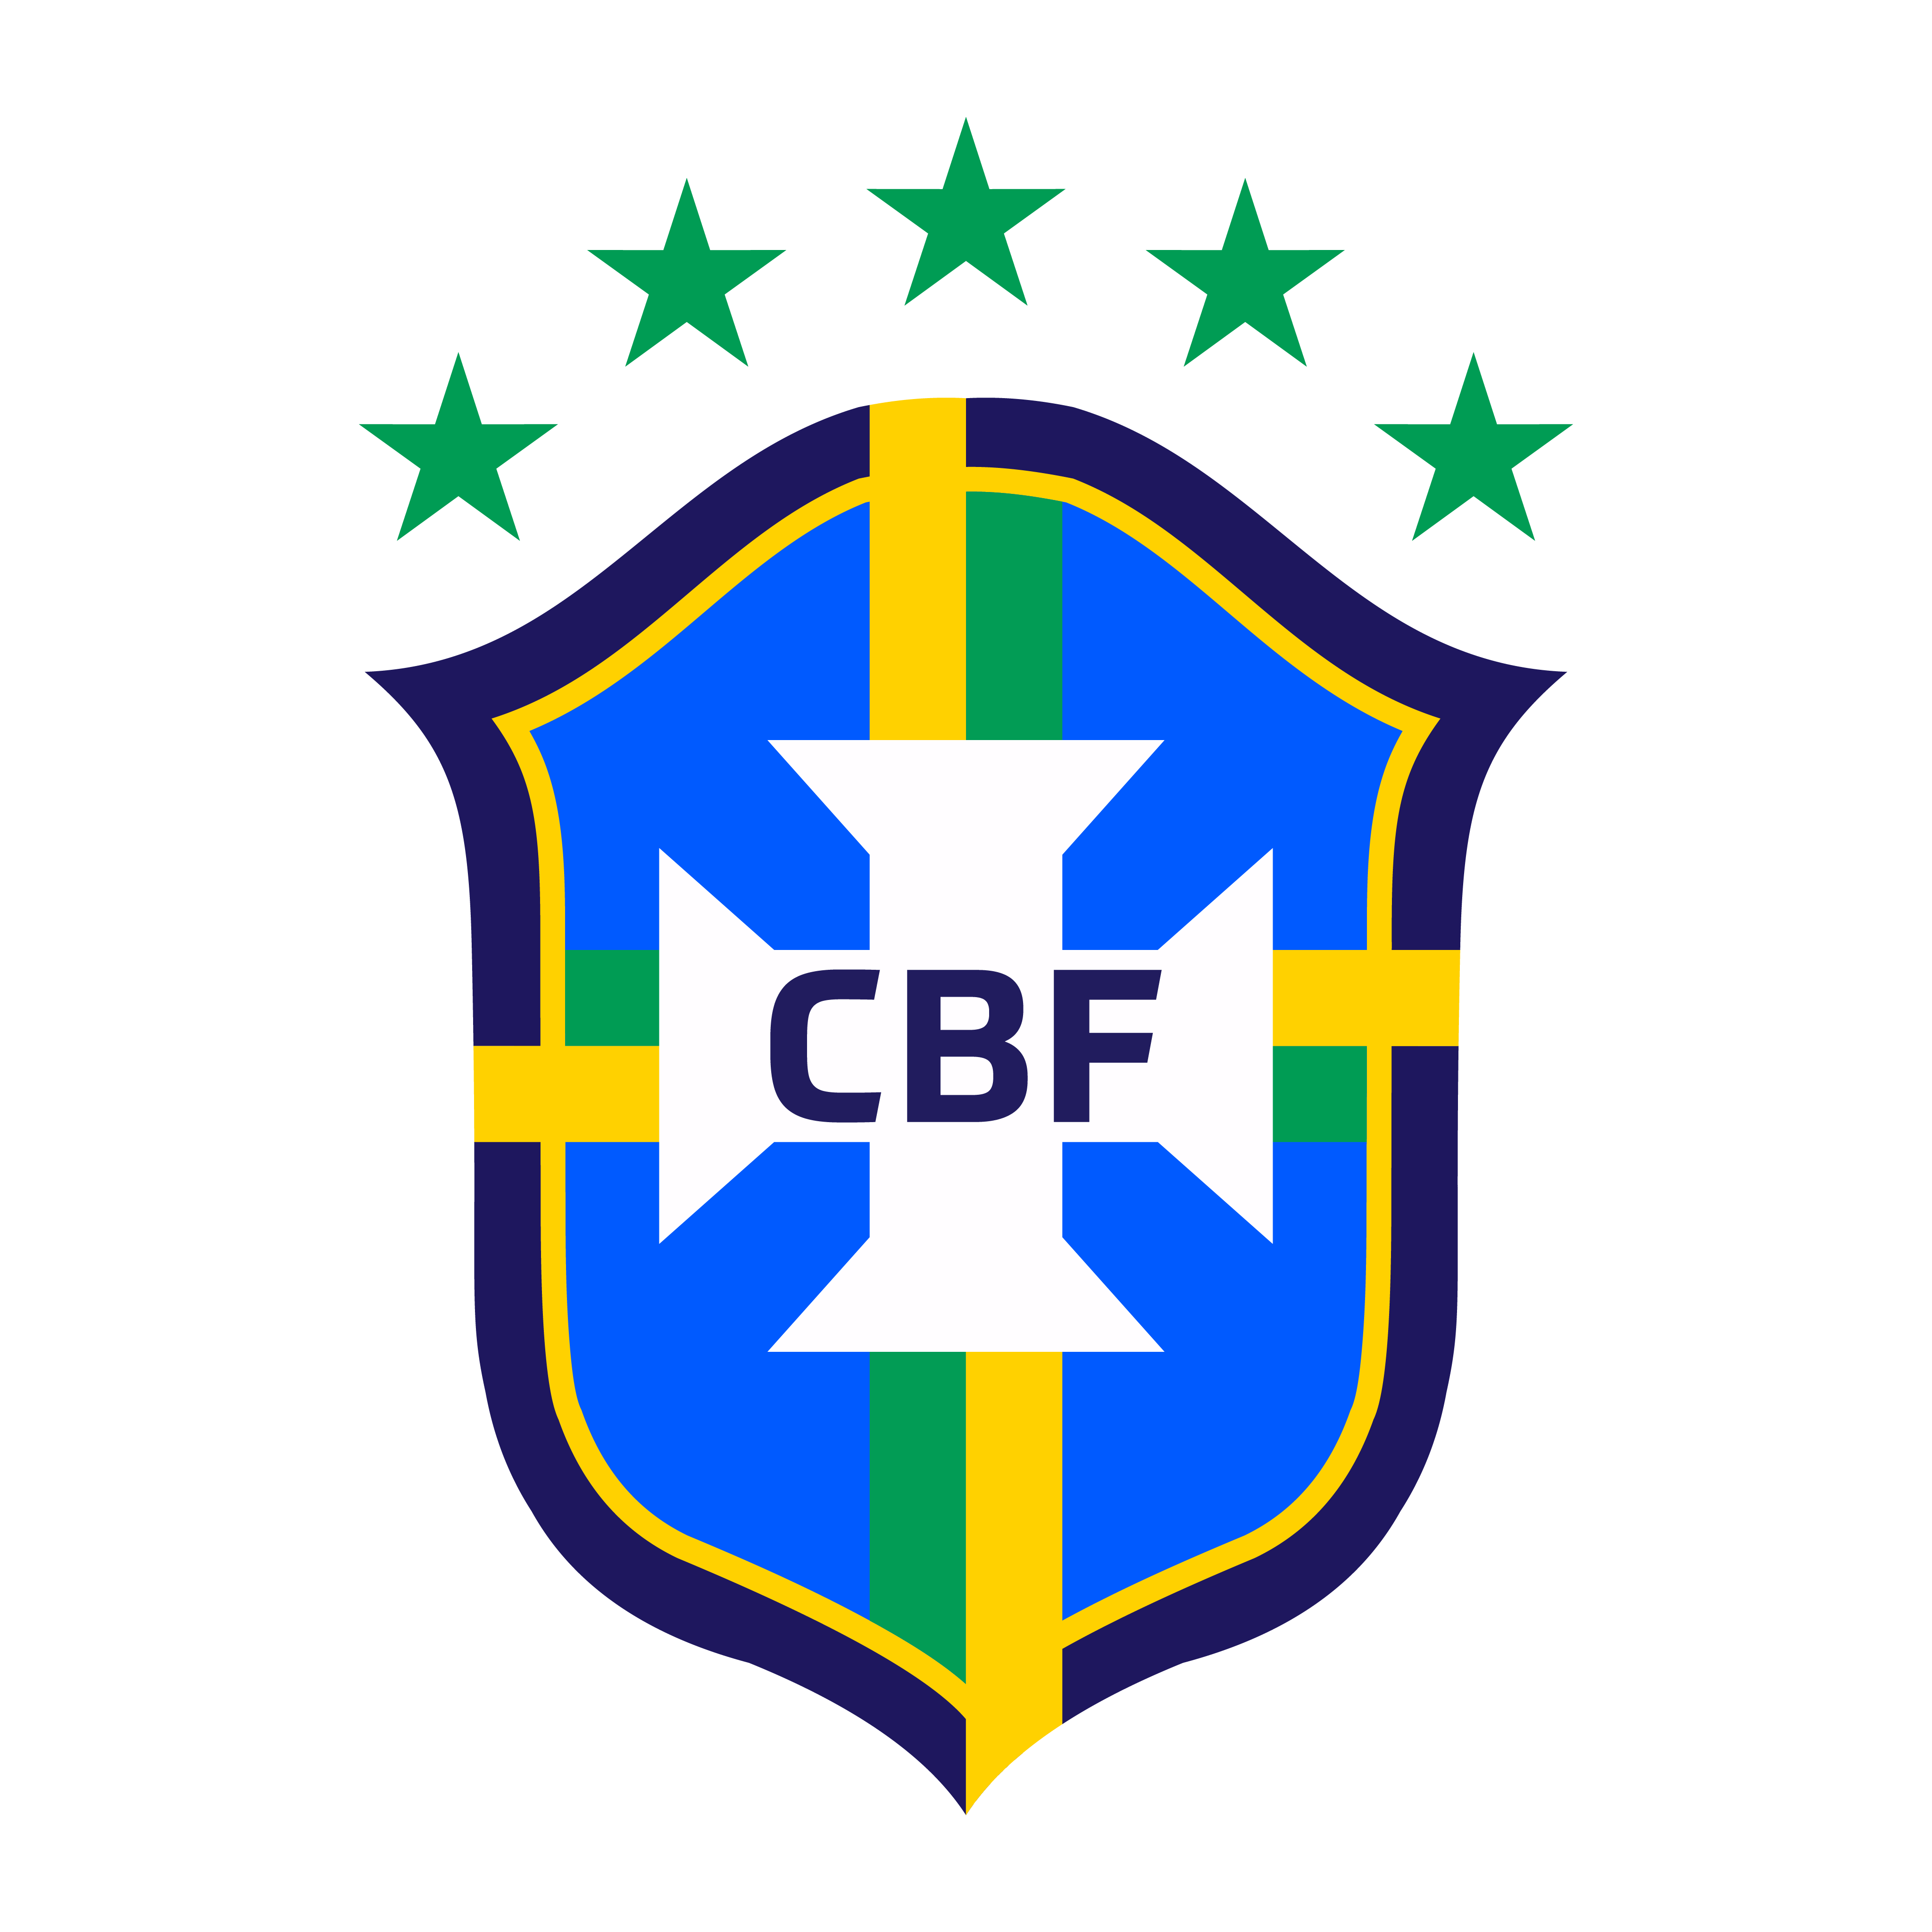 logo selecao brasileira brasil novo logo 2019 com estrelas